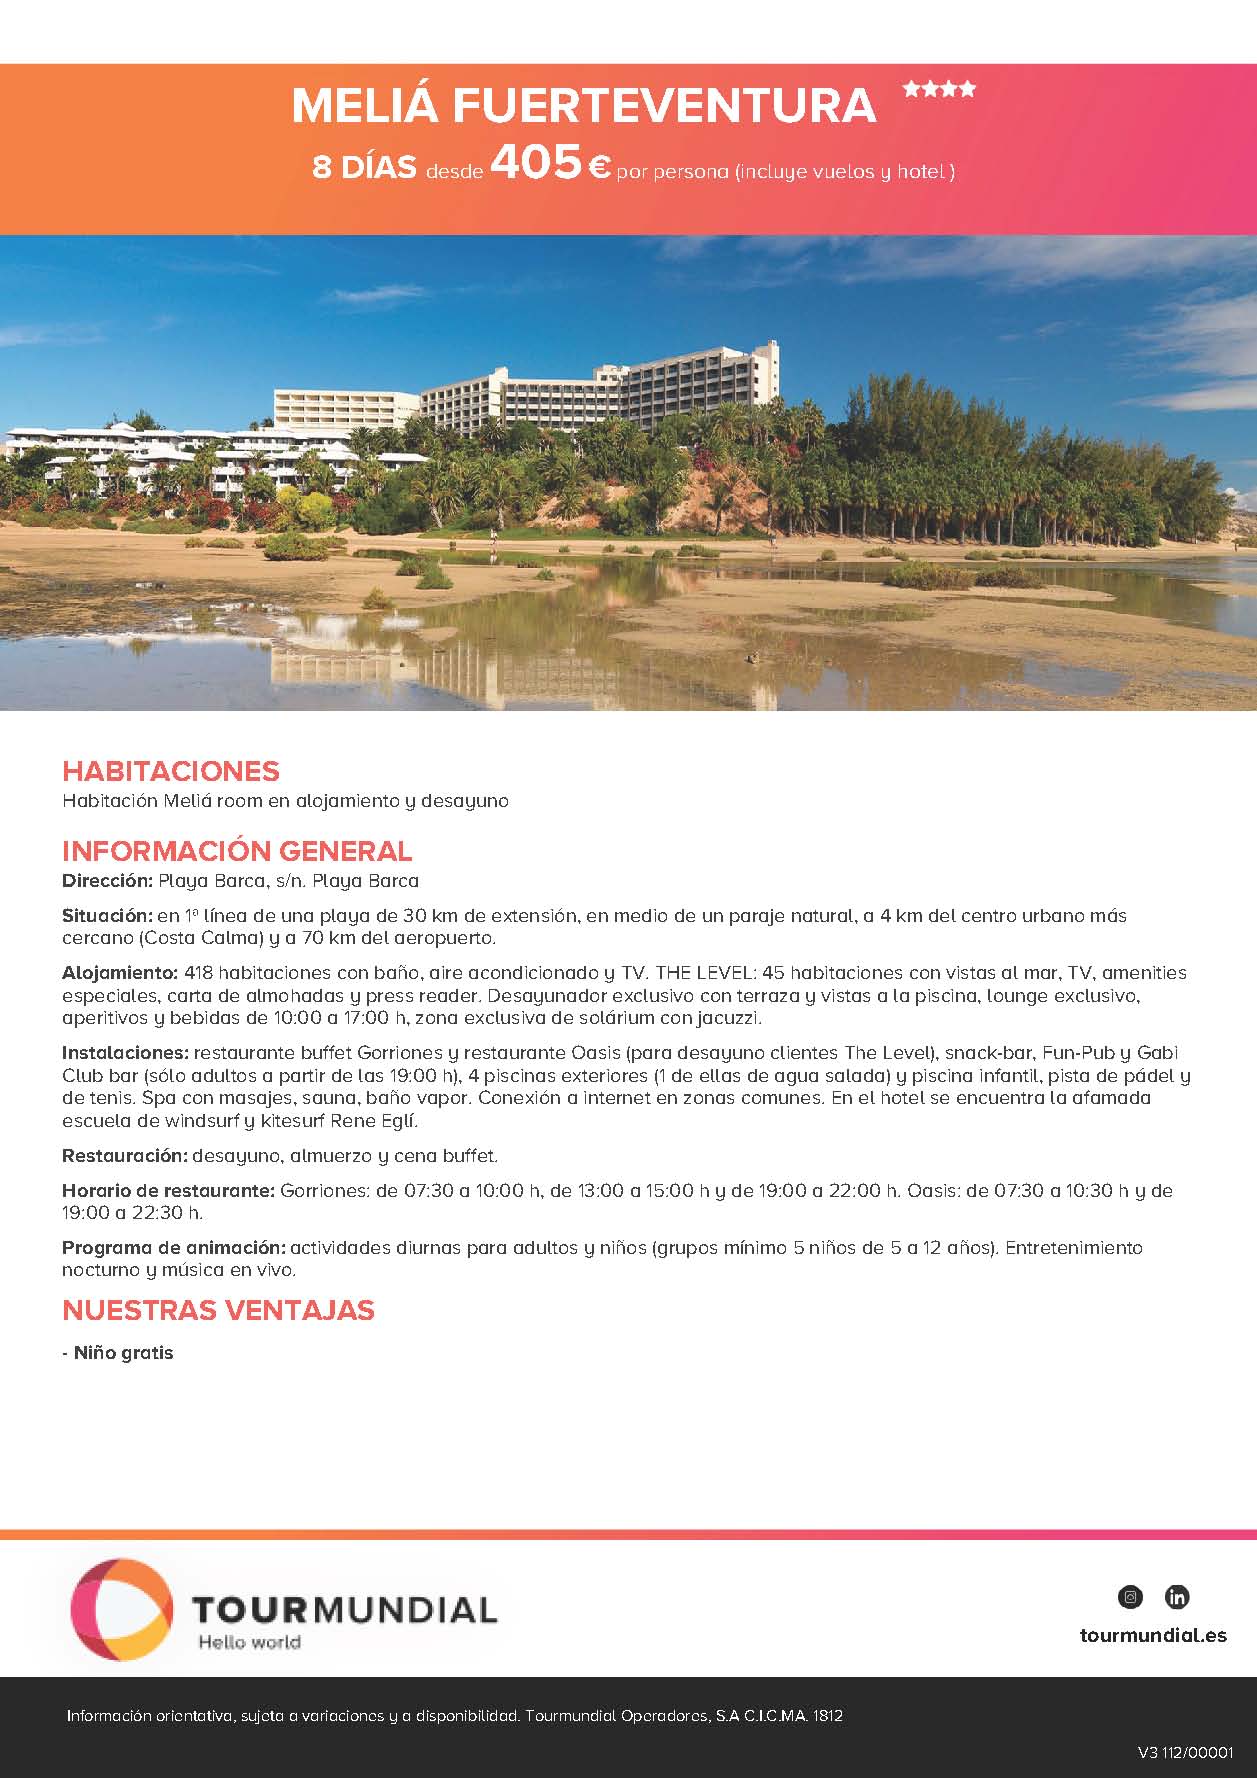 Oferta Tourmundial Vacaciones en Fuerteventura Hotel Meila 2021 8 dias desde 405€